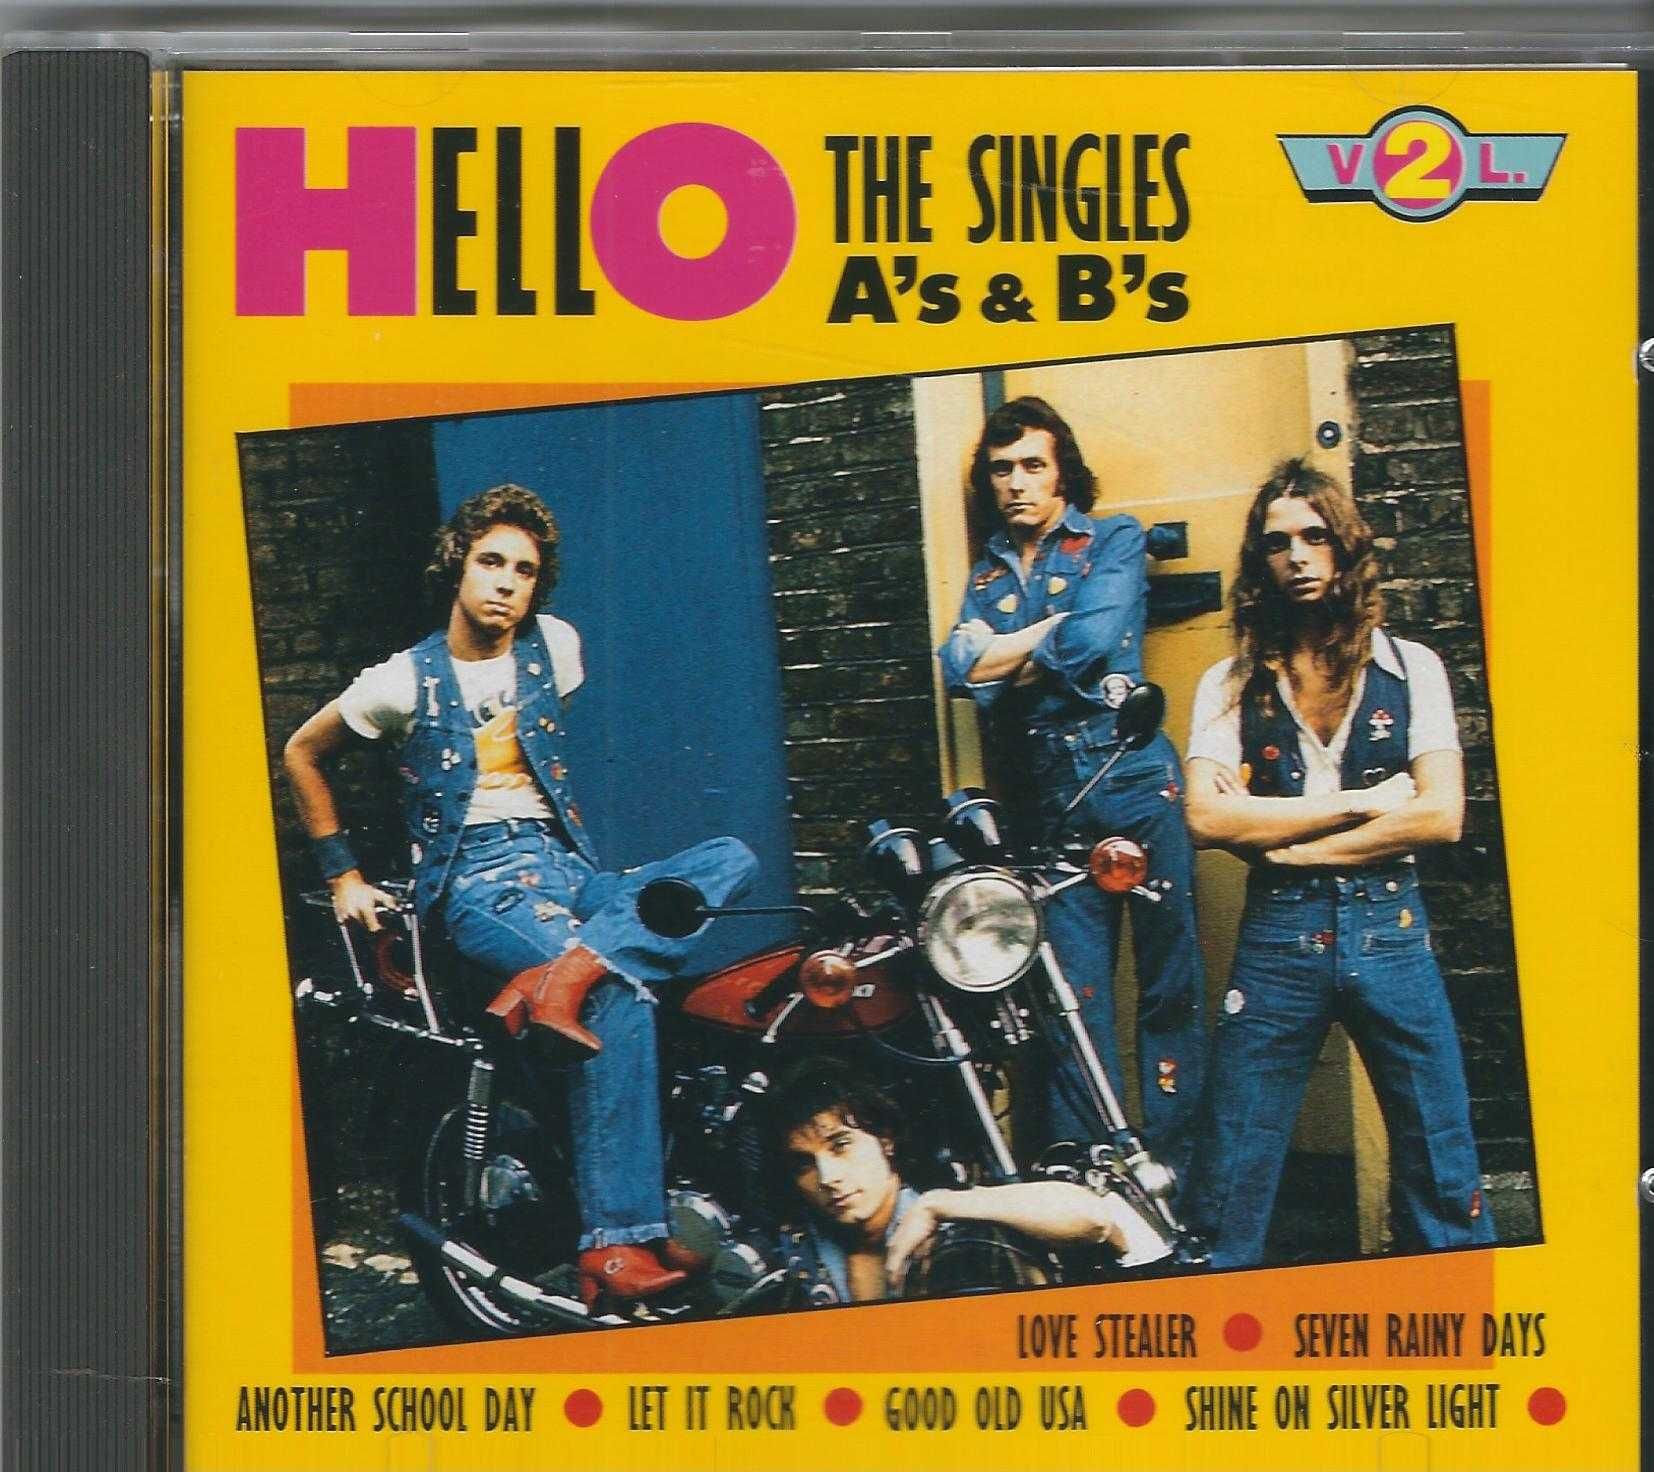 CD Hello - The Singles A's & B's Vol. 2 (1992)